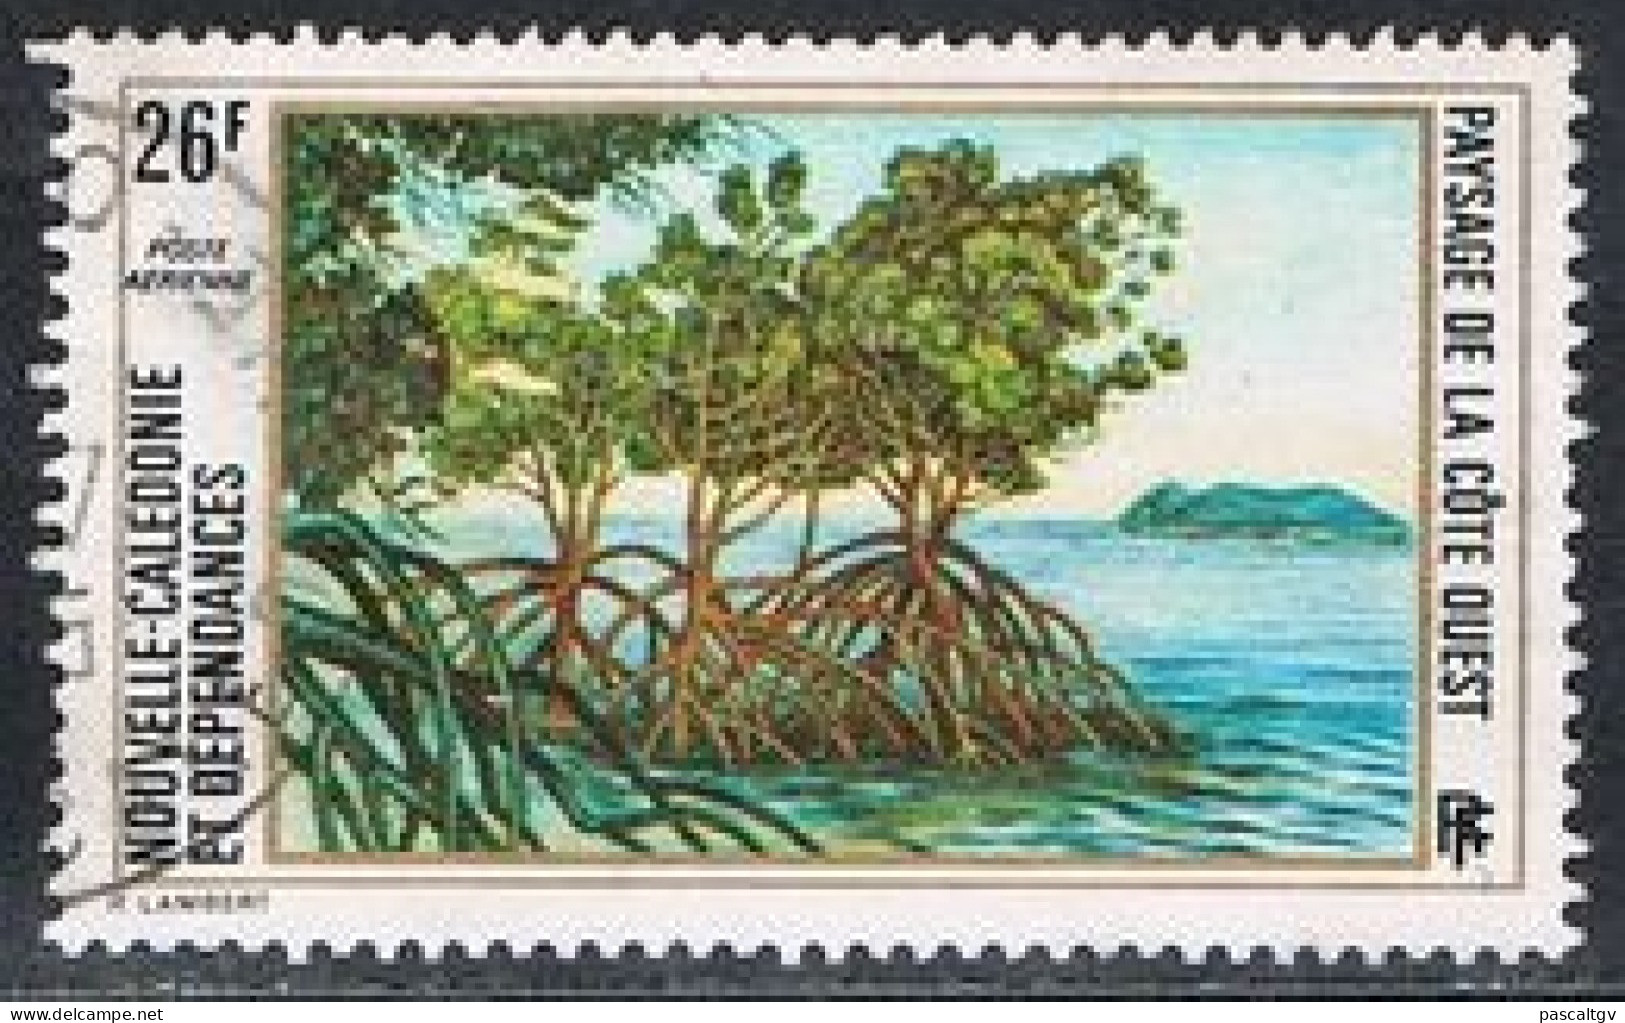 Nouvelle Calédonie - 1974 - PA N° 149 Oblitéré - Used Stamps